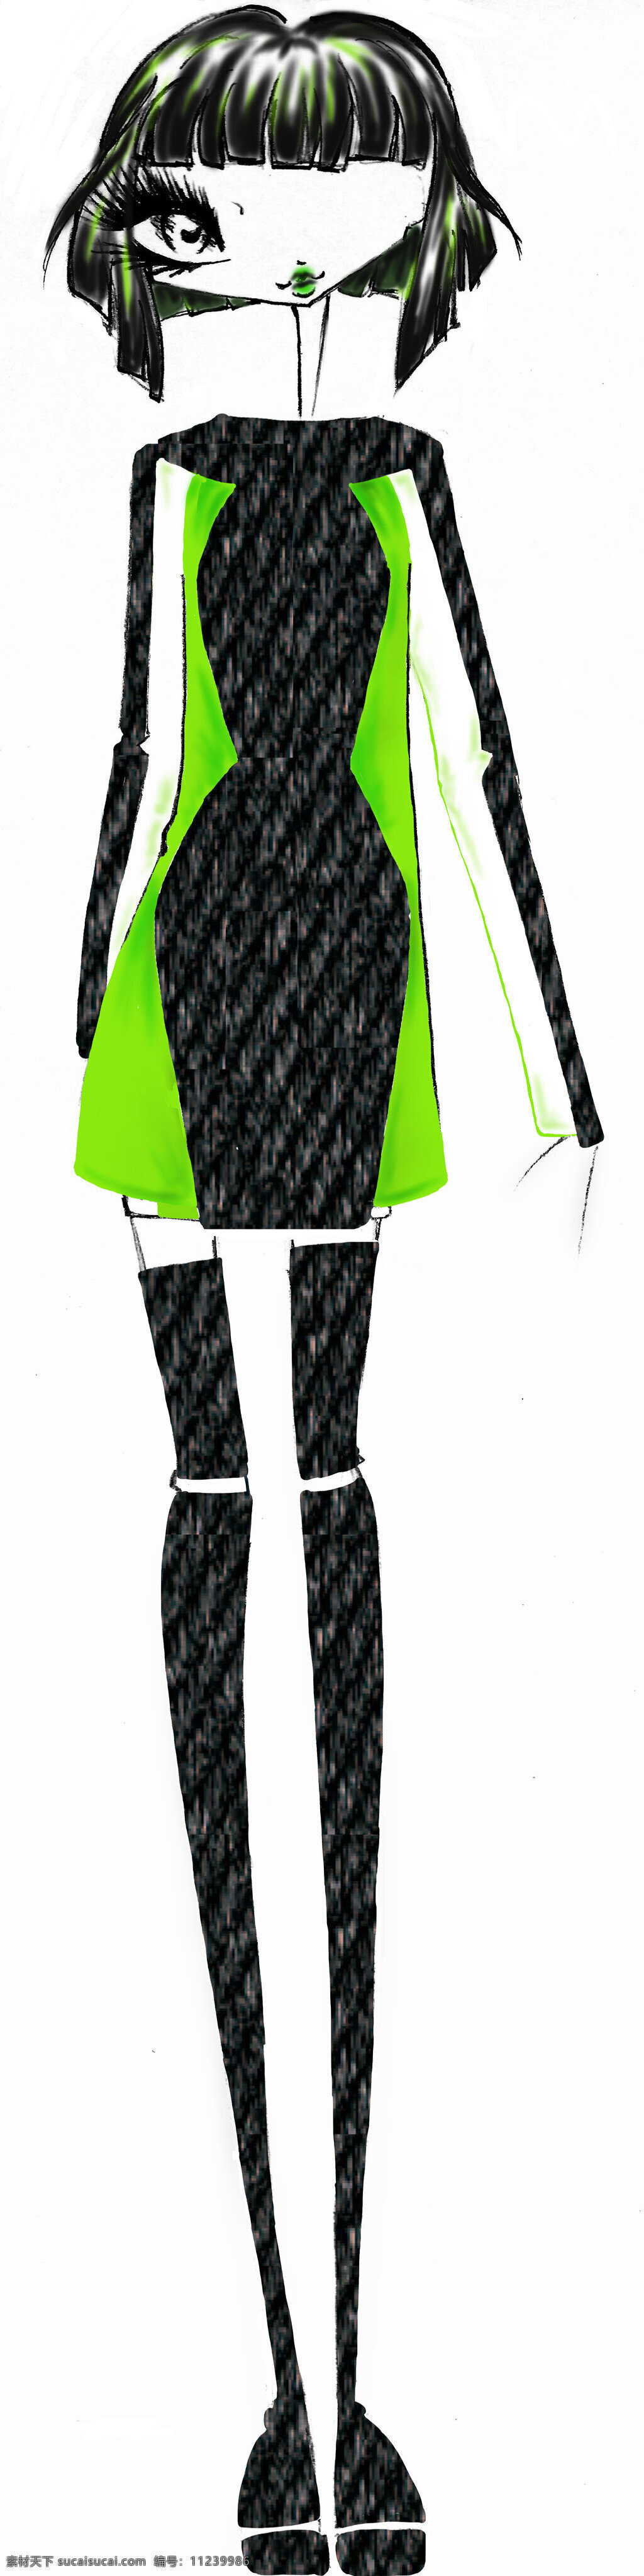 黑绿色 连衣裙 套装 设计图 服装设计 时尚女装 职业女装 职业装 女装设计 效果图 短裙 衬衫 服装 服装效果图 绿色